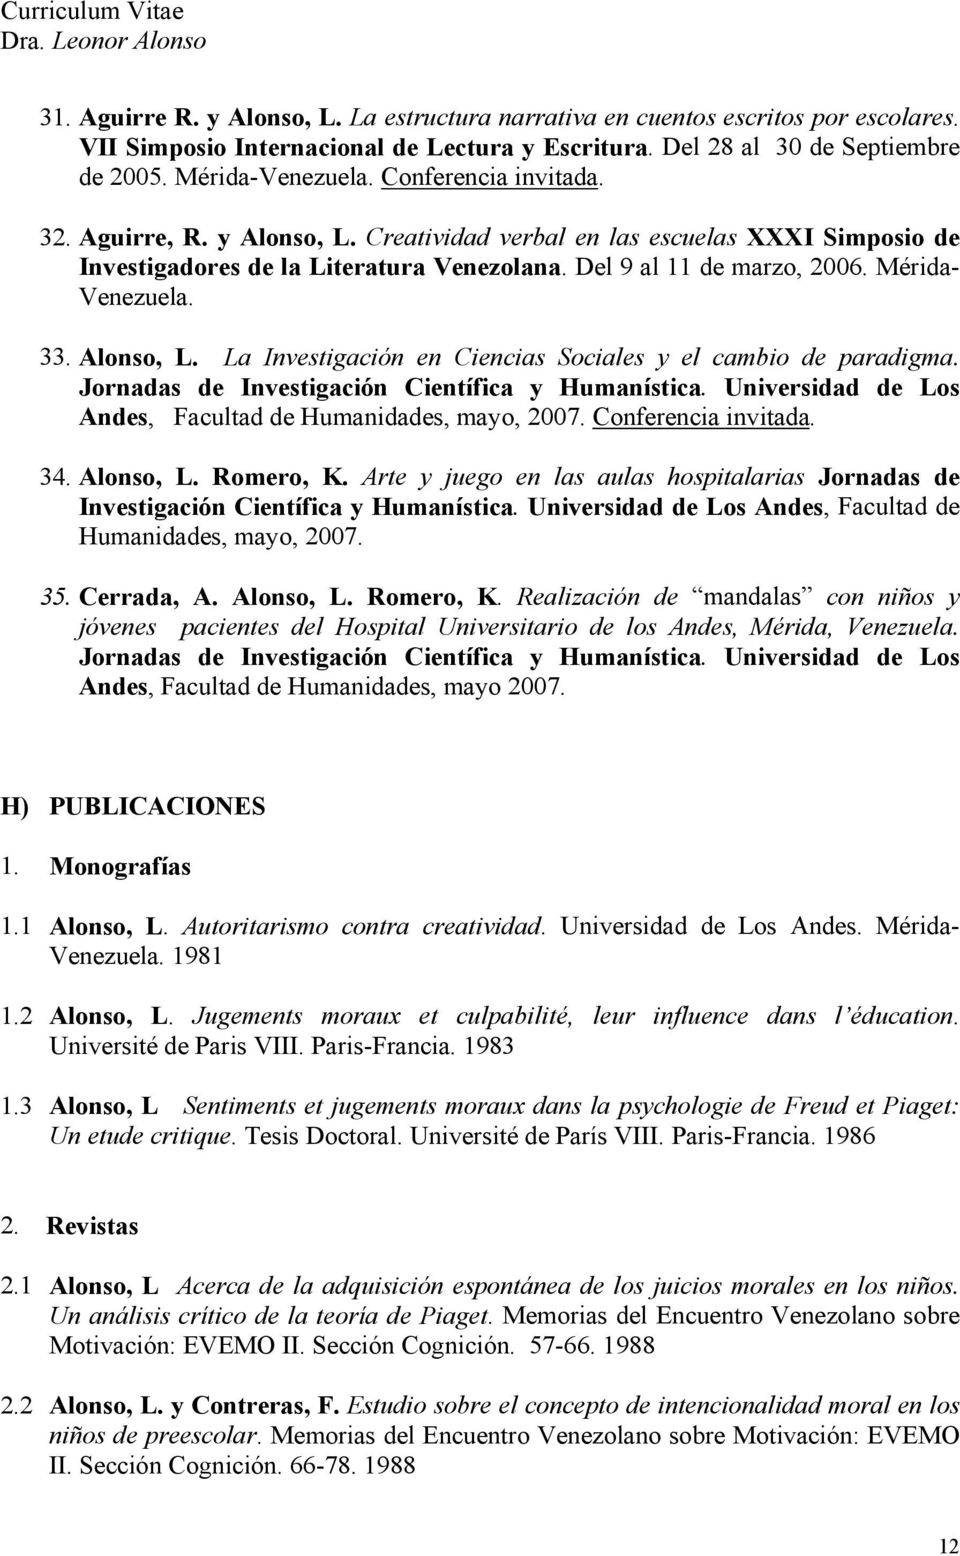 Alonso, L. La Investigación en Ciencias Sociales y el cambio de paradigma. Jornadas de Investigación Científica y Humanística. Universidad de Los Andes, Facultad de Humanidades, mayo, 2007.